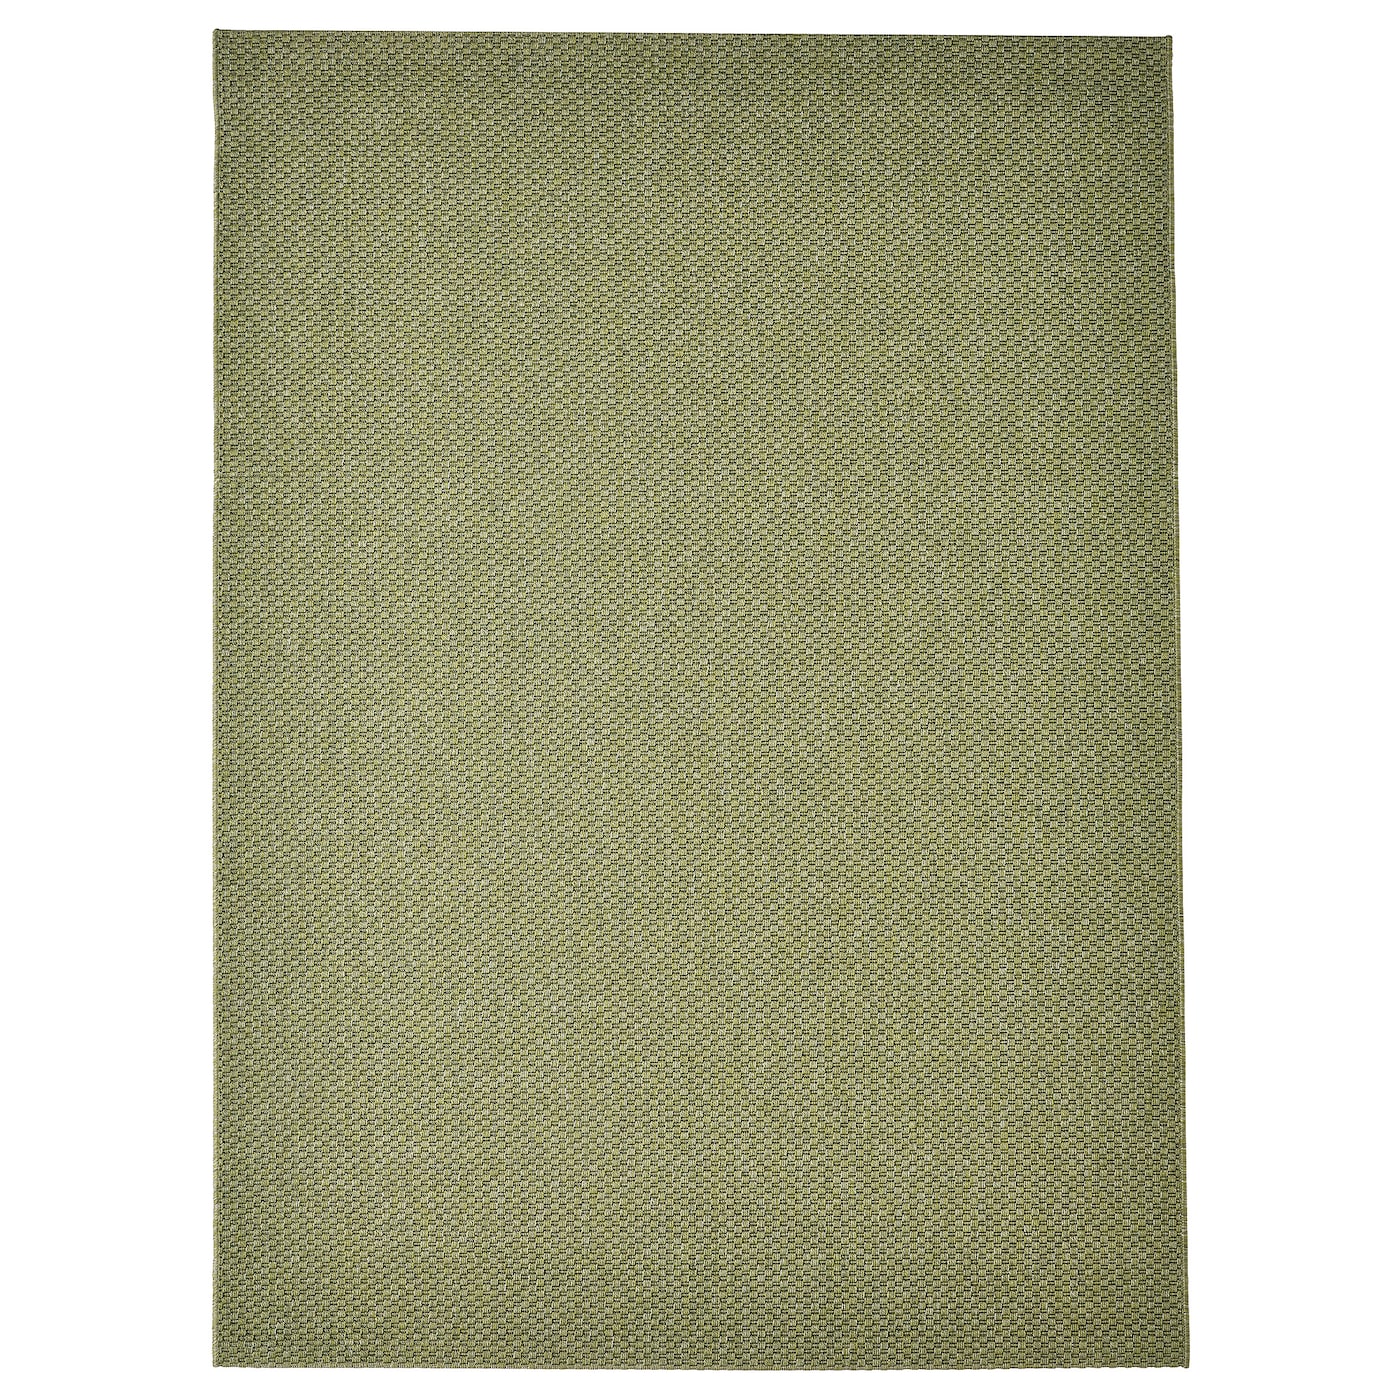 Текстильный ковер для дома и улицы - IKEA MORUM/МОРУМ ИКЕА, 230х160 см, зеленый